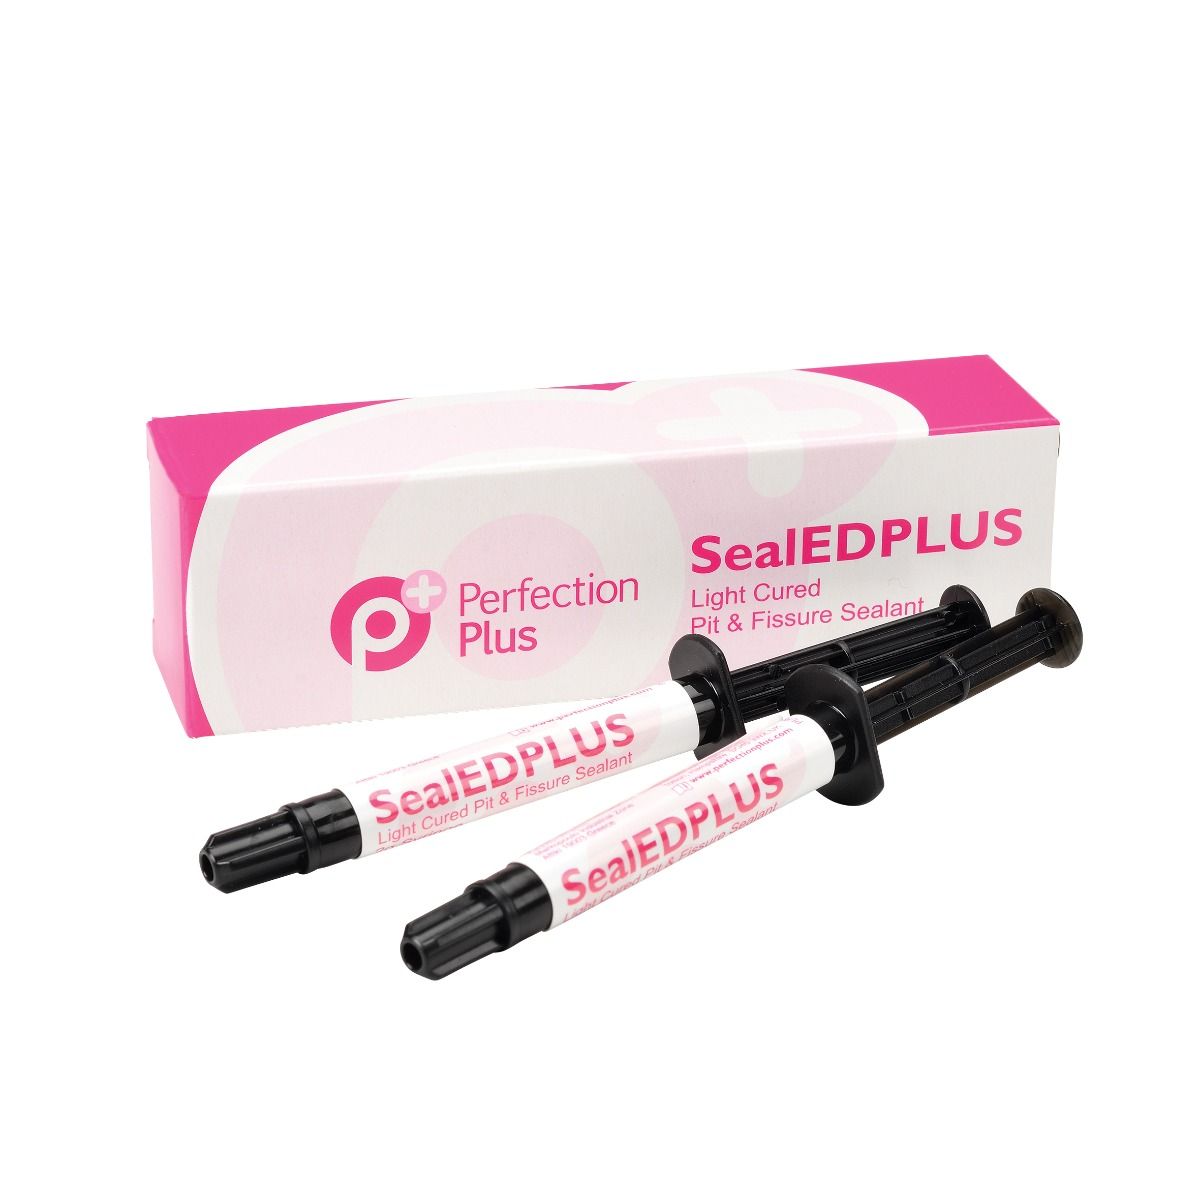 参比制剂,进口原料药,医药原料药 SealEDPLUS Fissure Sealant: 2 x 2g Syringe + 5 Tips - Opaque